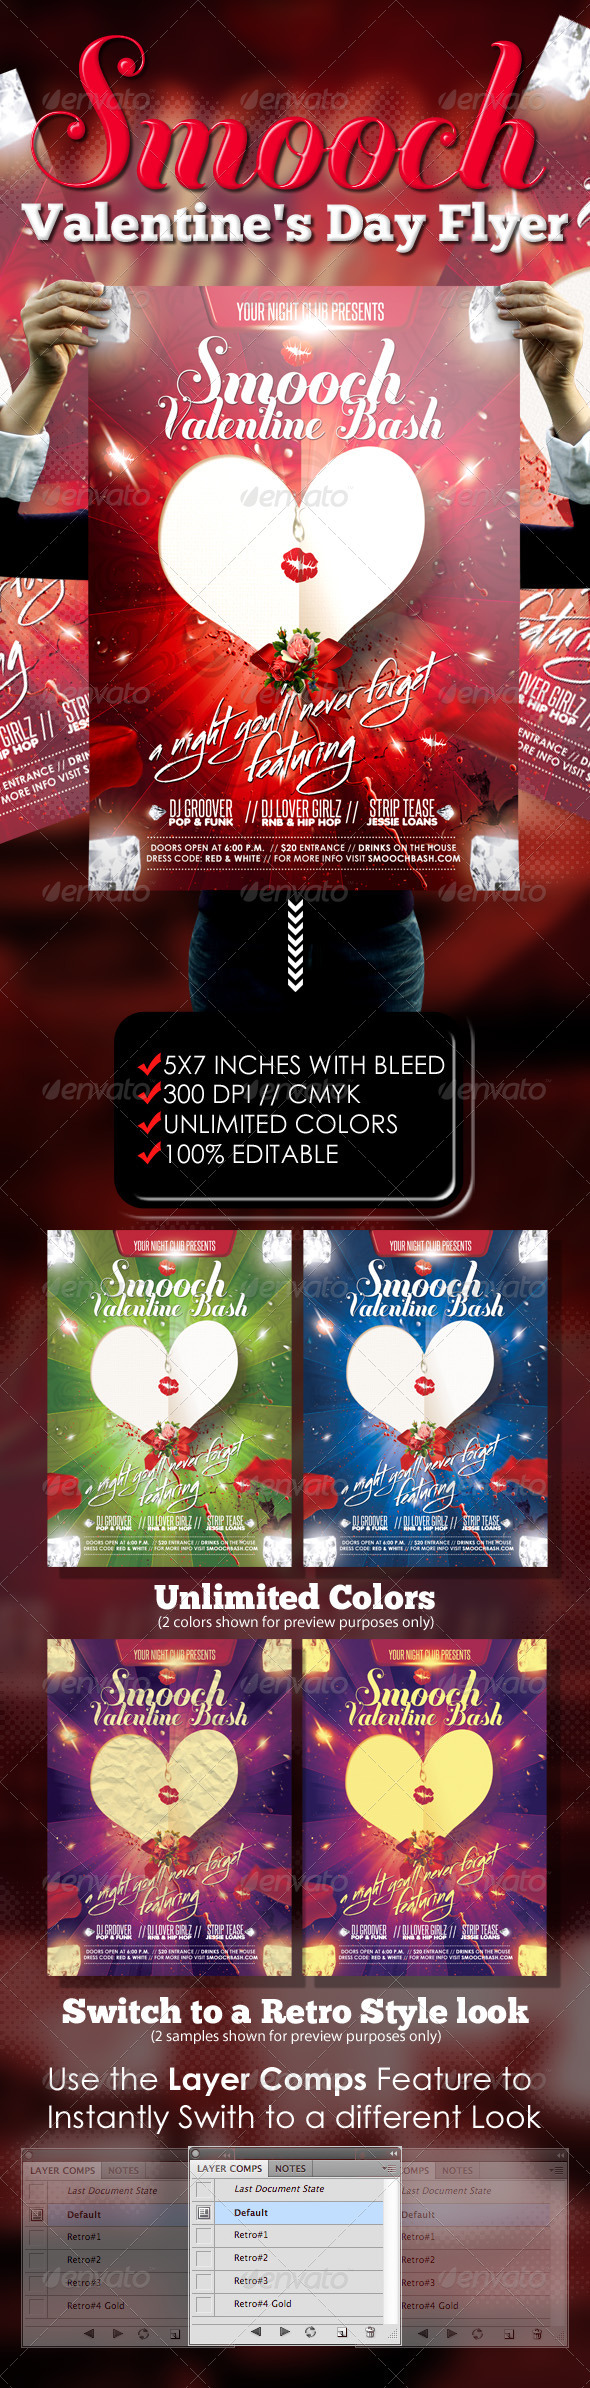 Smooch - Valentines Day Flyer